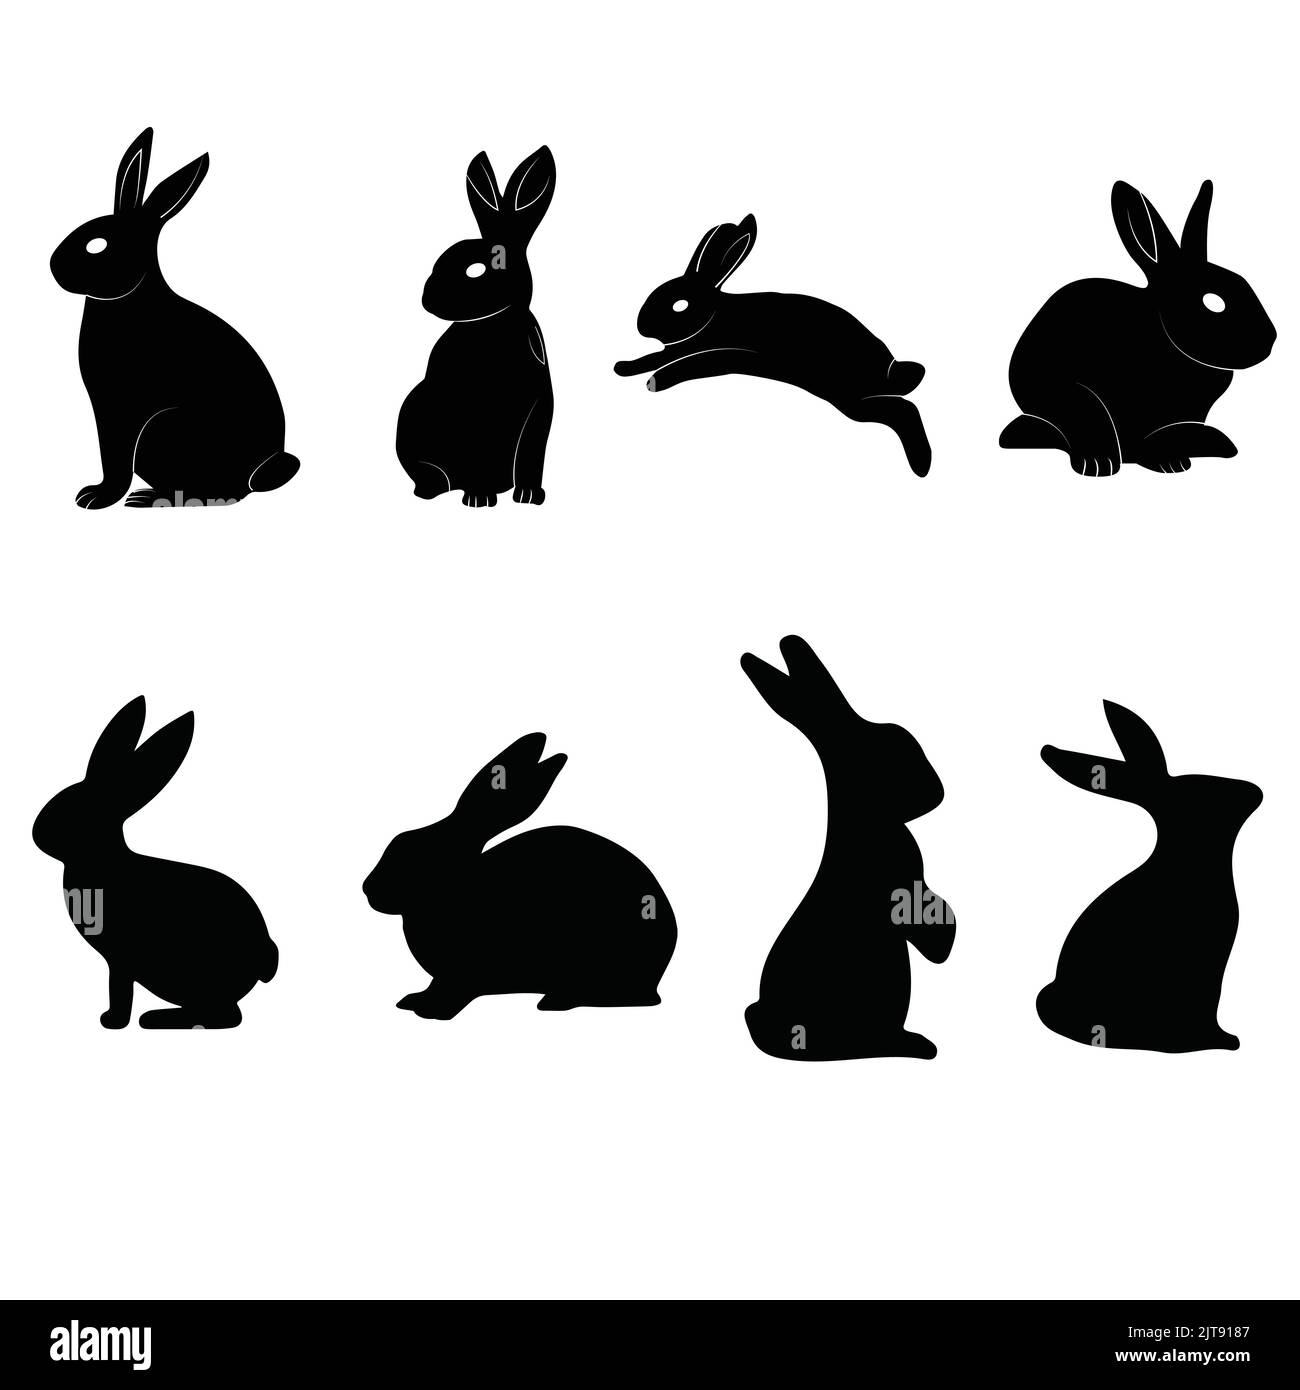 adorable lapin silhouette lapin animal silhouette noir vecteur lapin dans différentes poses Illustration de Vecteur